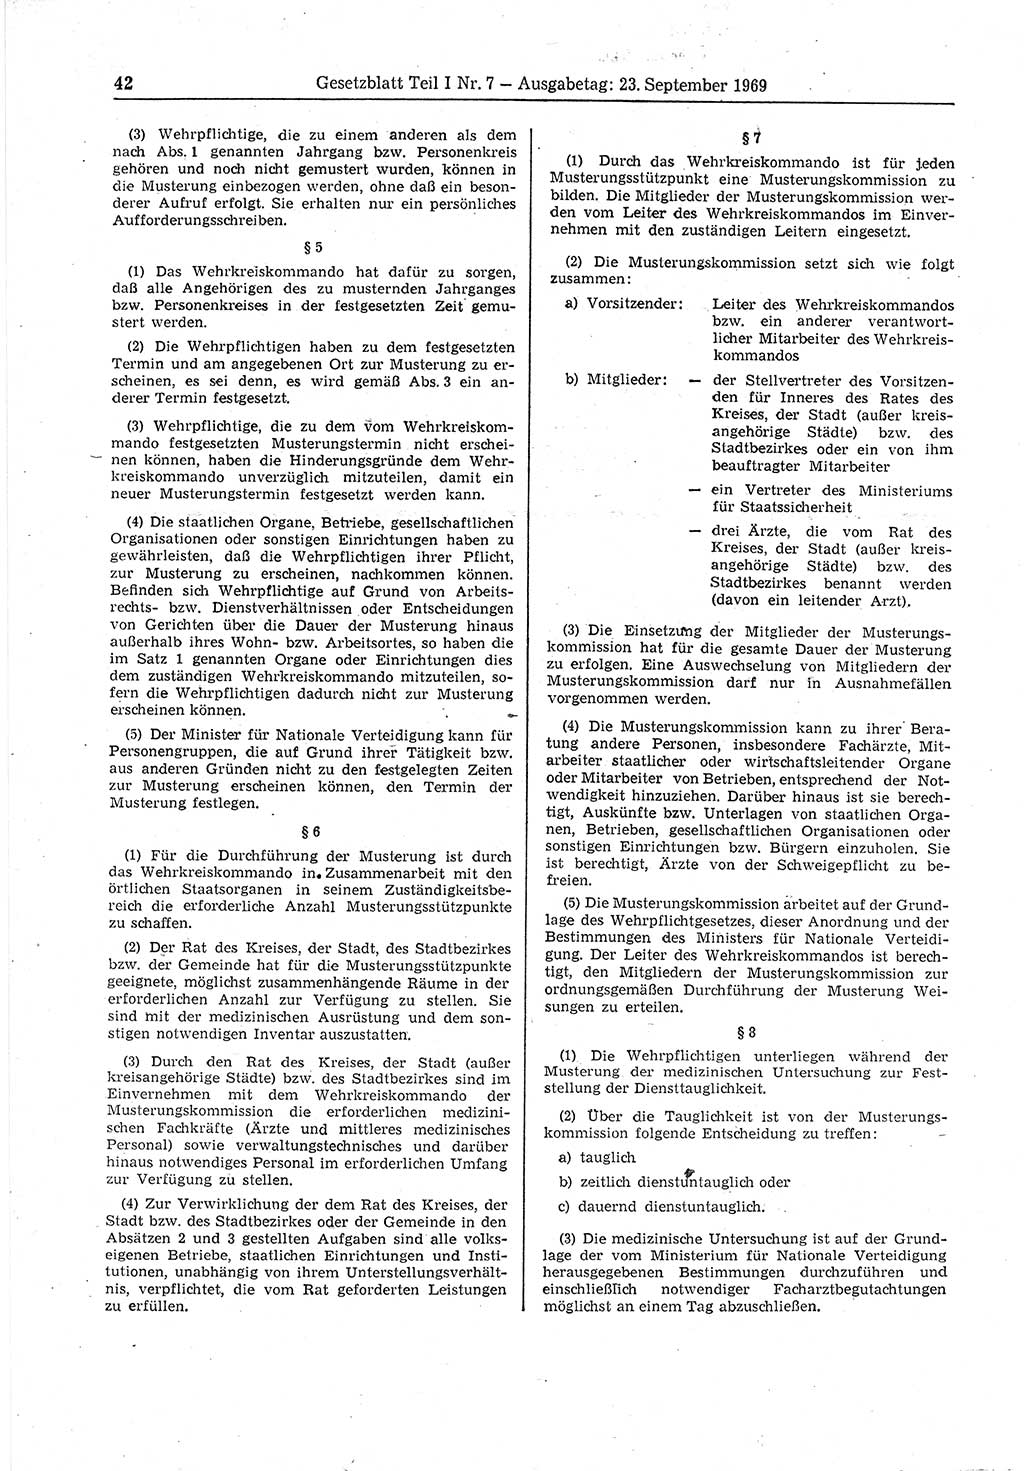 Gesetzblatt (GBl.) der Deutschen Demokratischen Republik (DDR) Teil Ⅰ 1969, Seite 42 (GBl. DDR Ⅰ 1969, S. 42)